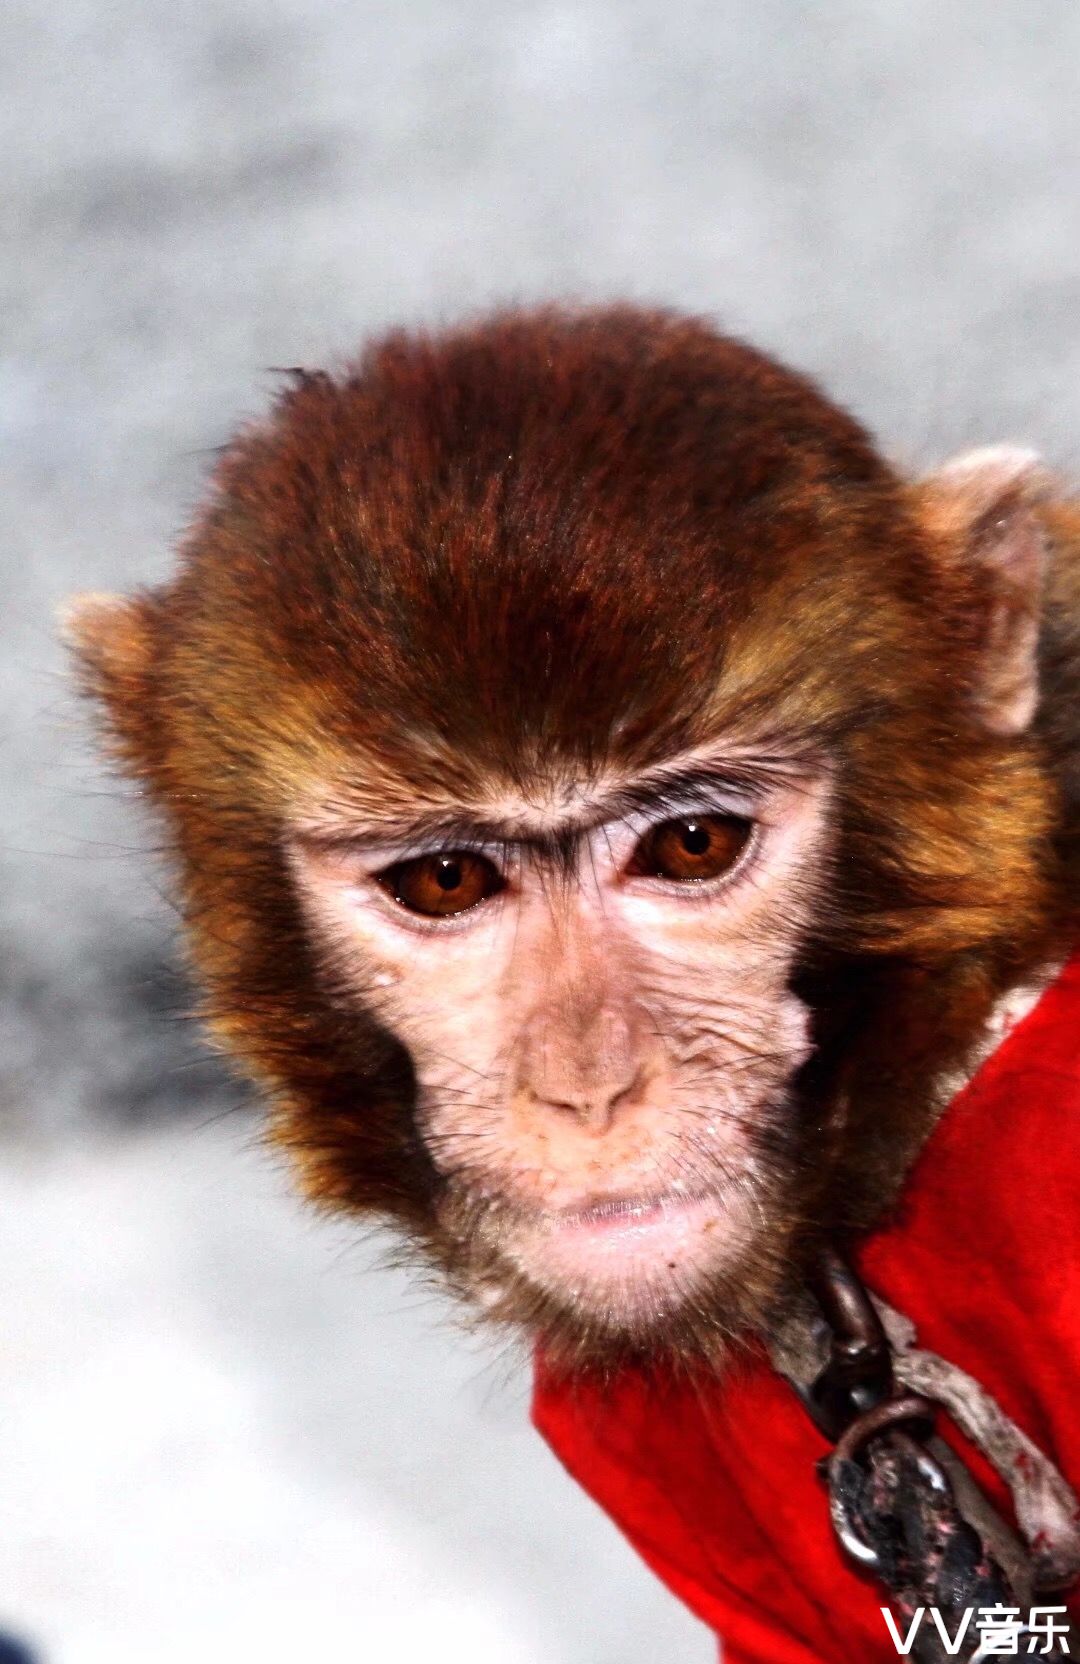 猴子一般大脑发达,眼眶朝向前方,眶间距窄,手和脚的趾(指)分开,大拇指